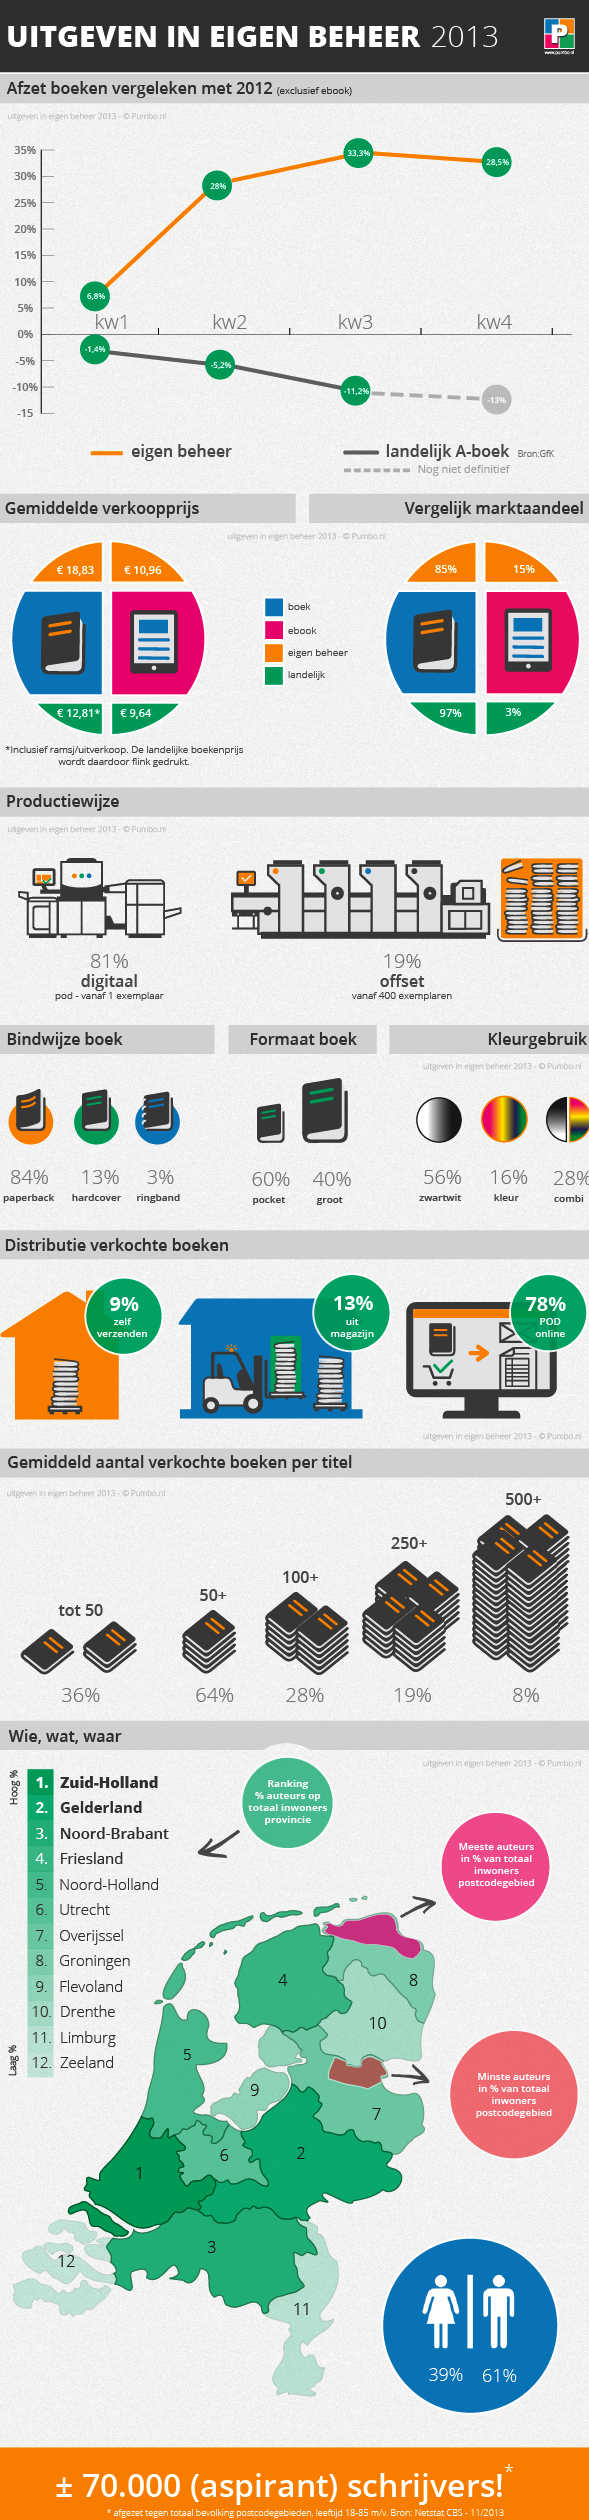 Infographic-Uitgeven-eigen-beheer-2013